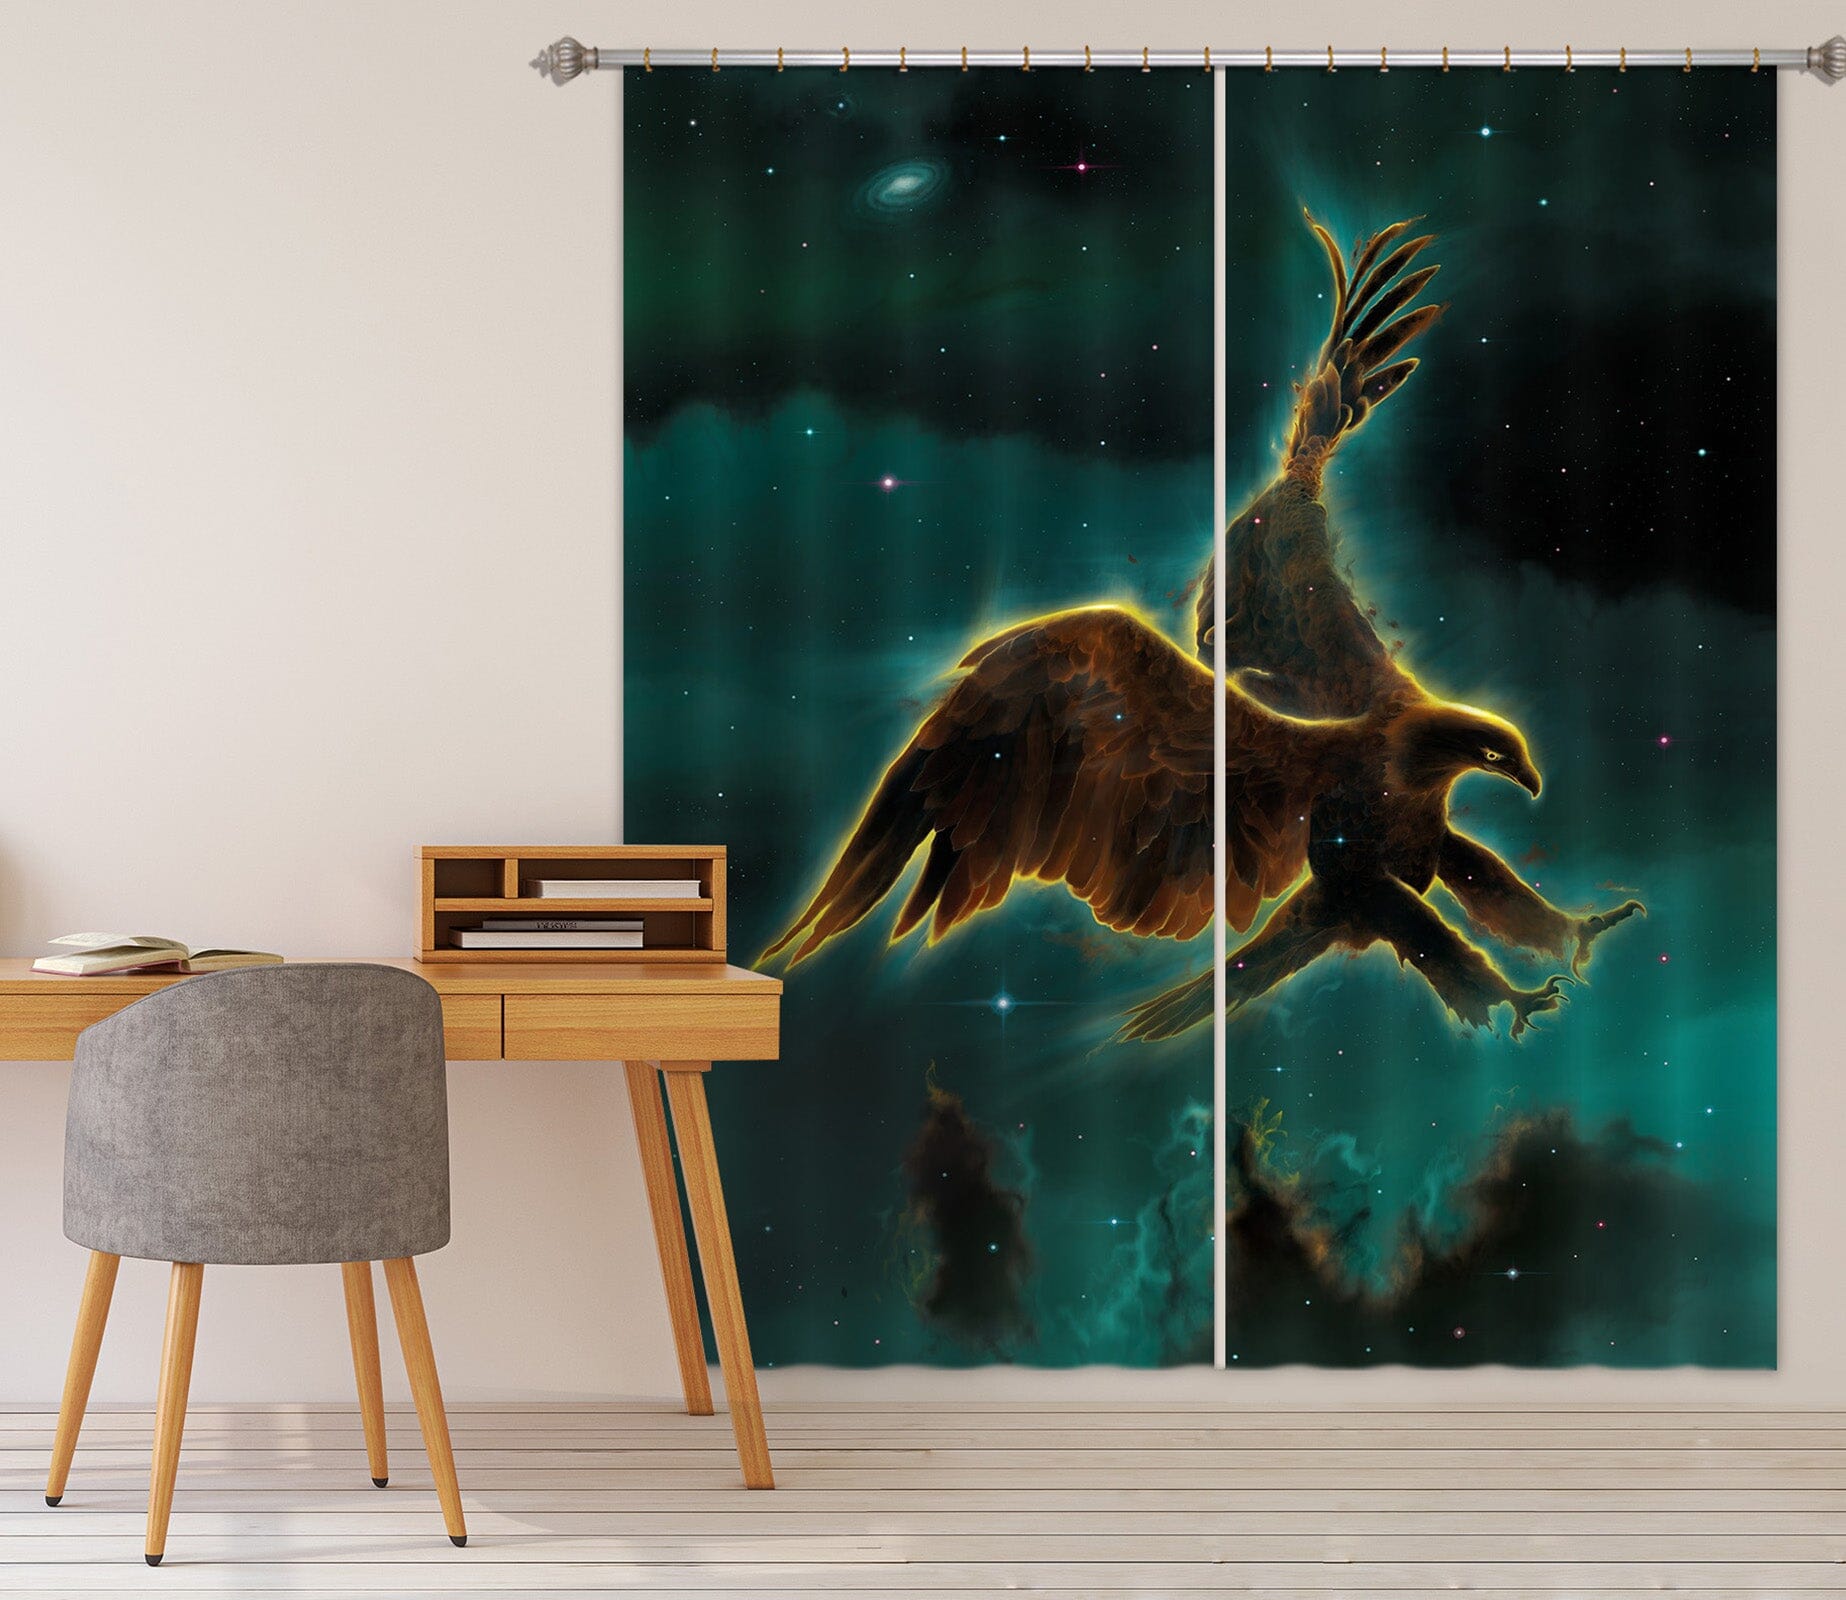 3D Eagle Galaxy 035 Vincent Hie Curtain Curtains Drapes Curtains AJ Creativity Home 